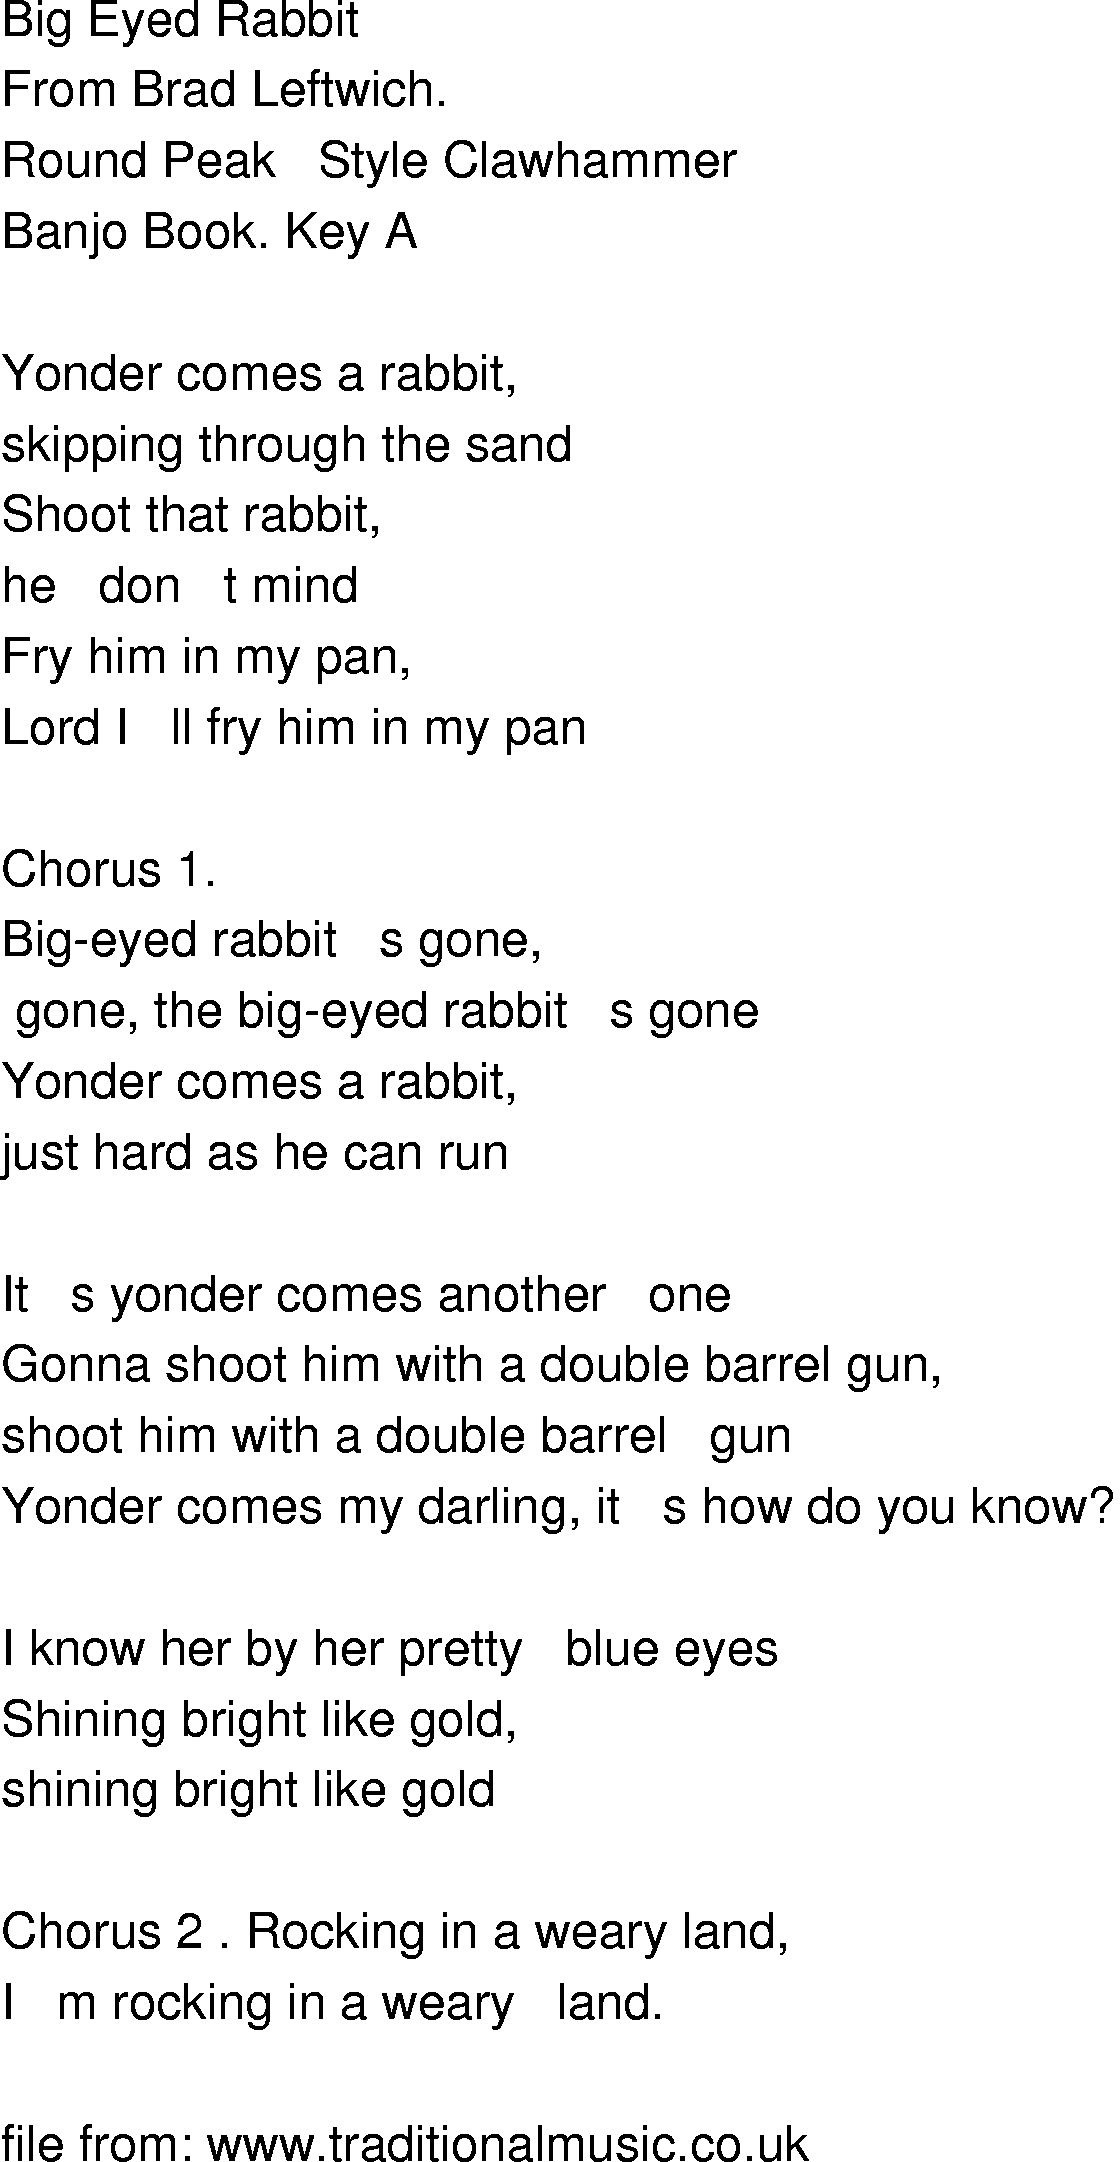 Old-Time (oldtimey) Song Lyrics - big eyed rabbit